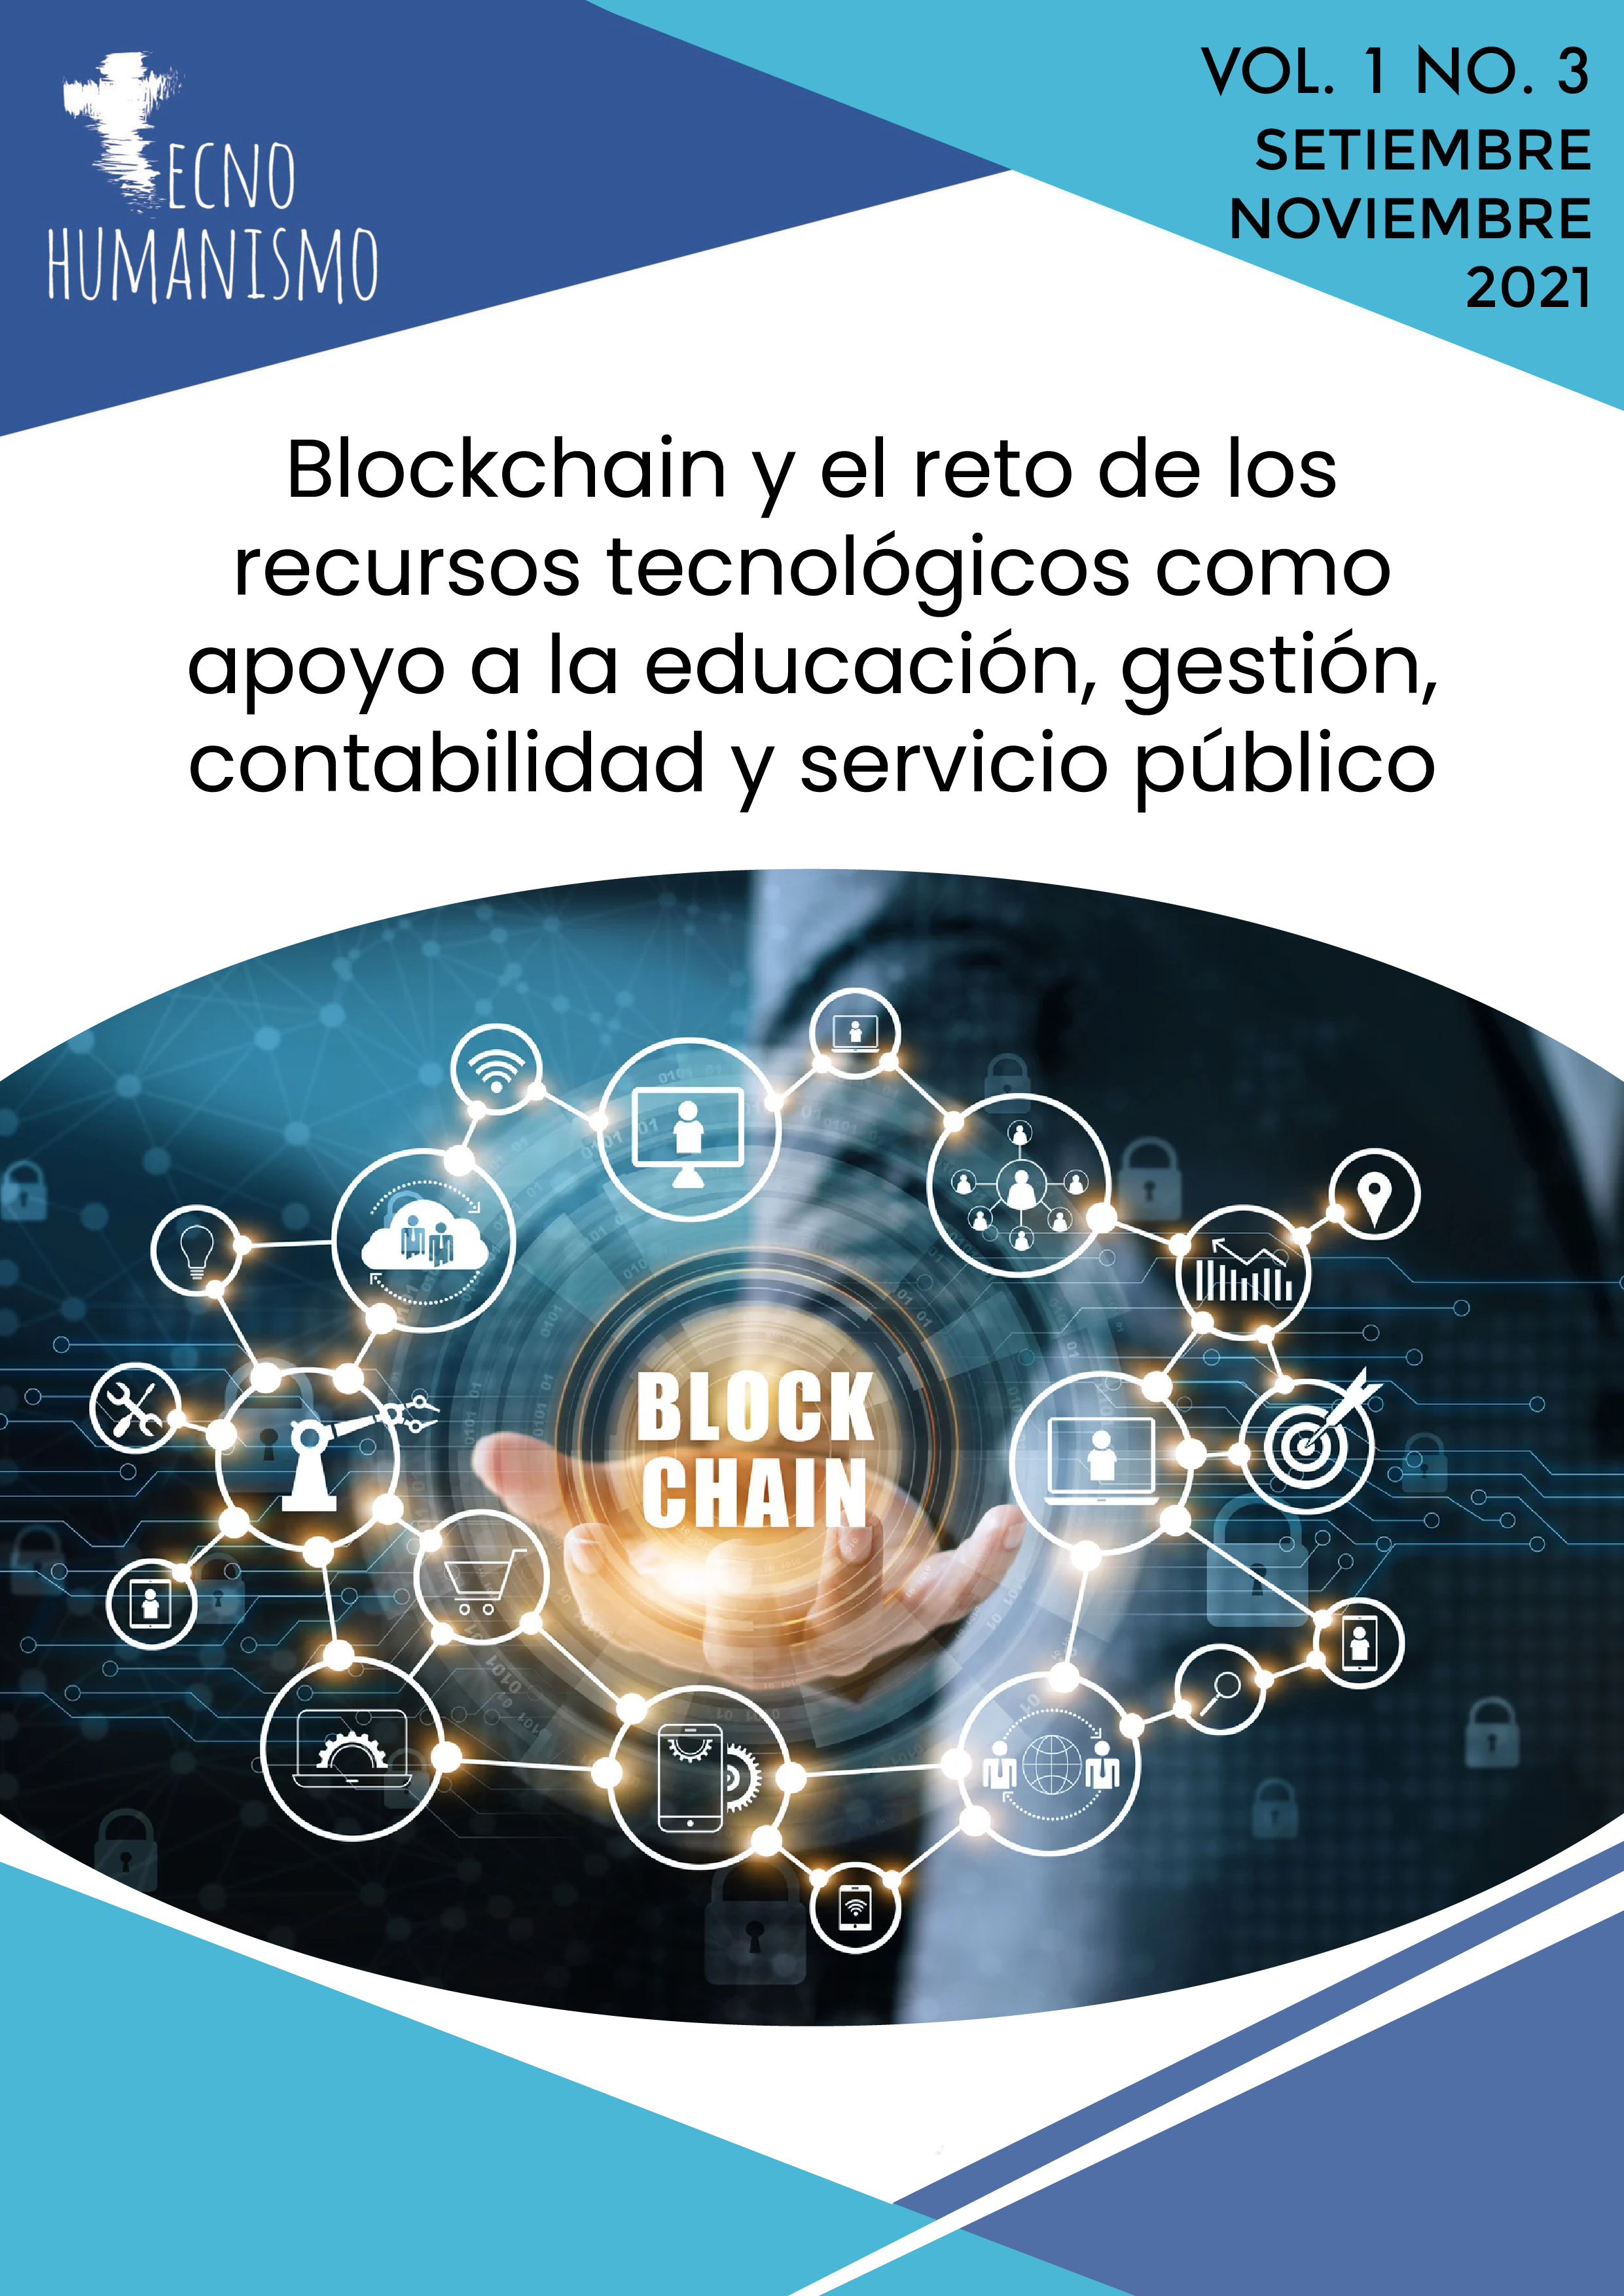 					Ver Vol. 1 Núm. 3 (2021): Blockchain y el reto de los recursos tecnológicos como apoyo a la educación, gestión, contabilidad y servicio público 
				